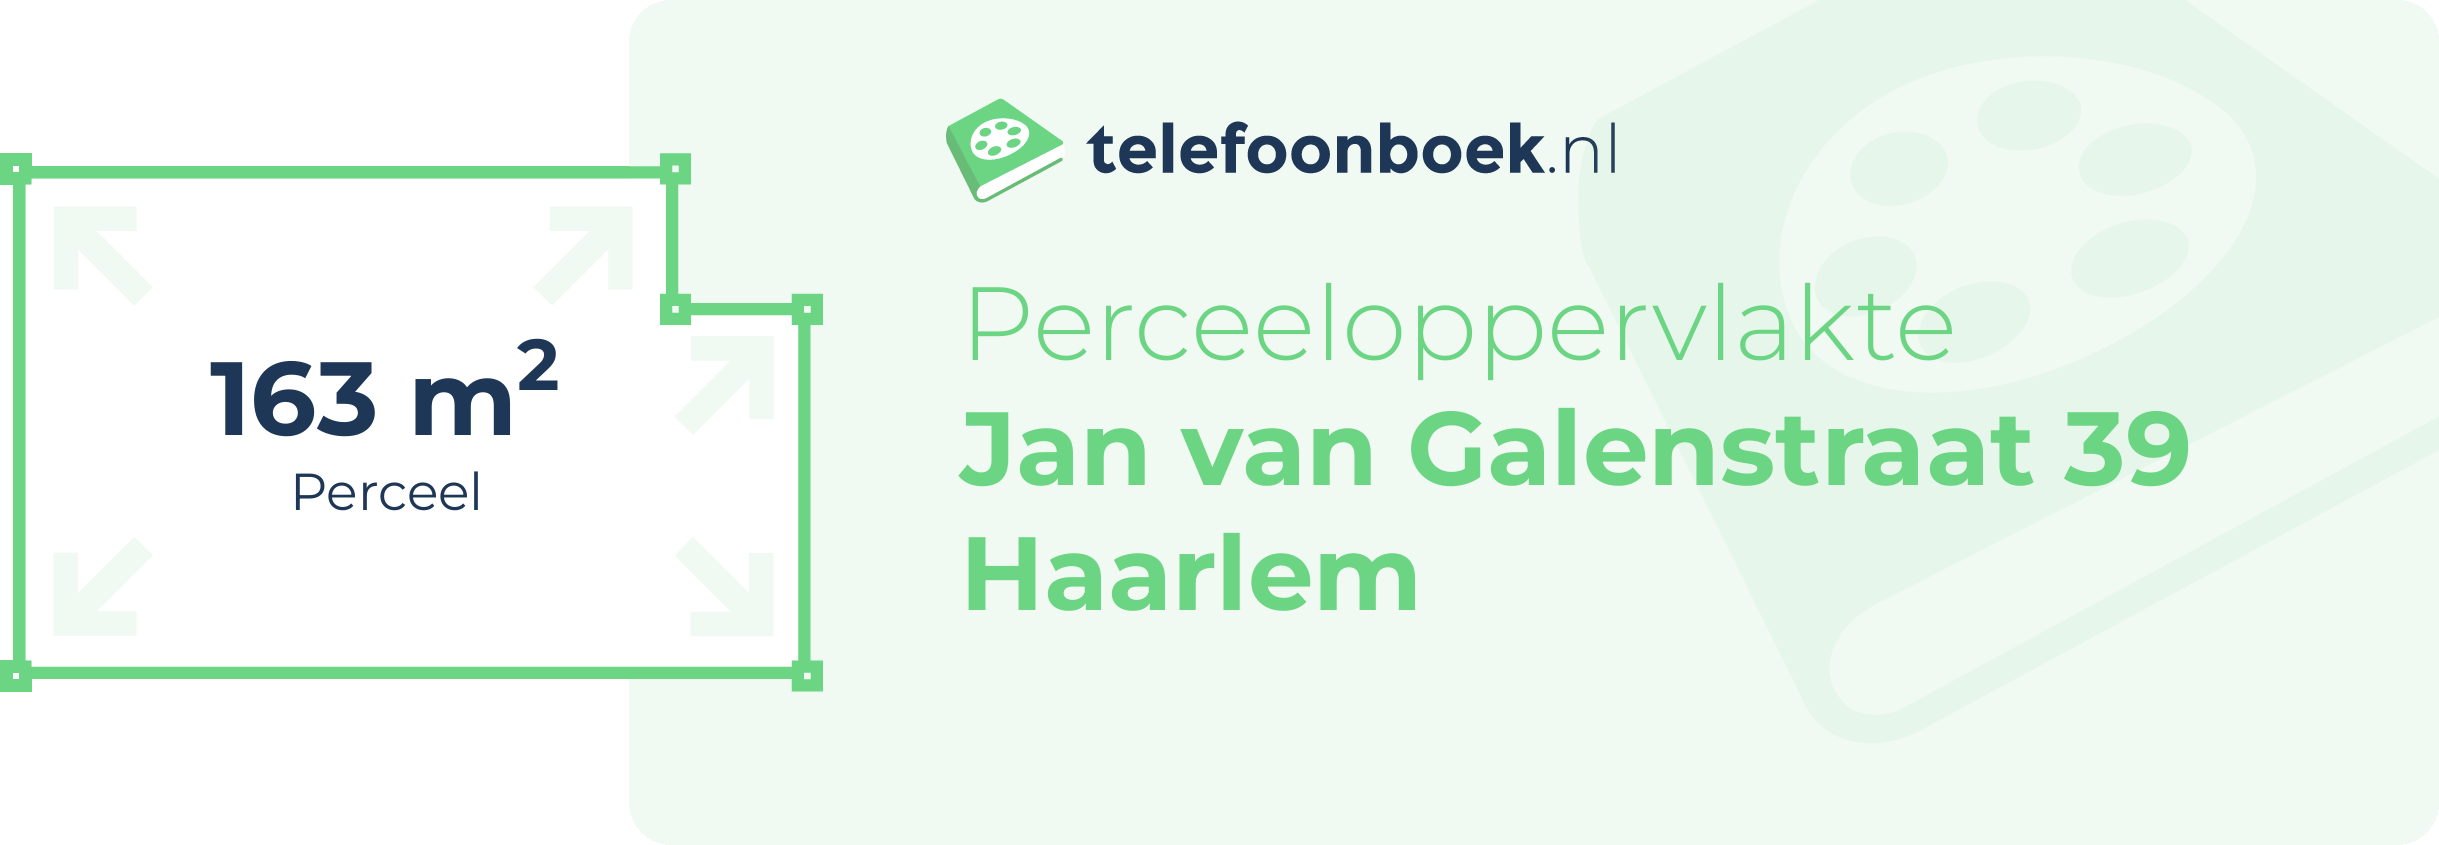 Perceeloppervlakte Jan Van Galenstraat 39 Haarlem